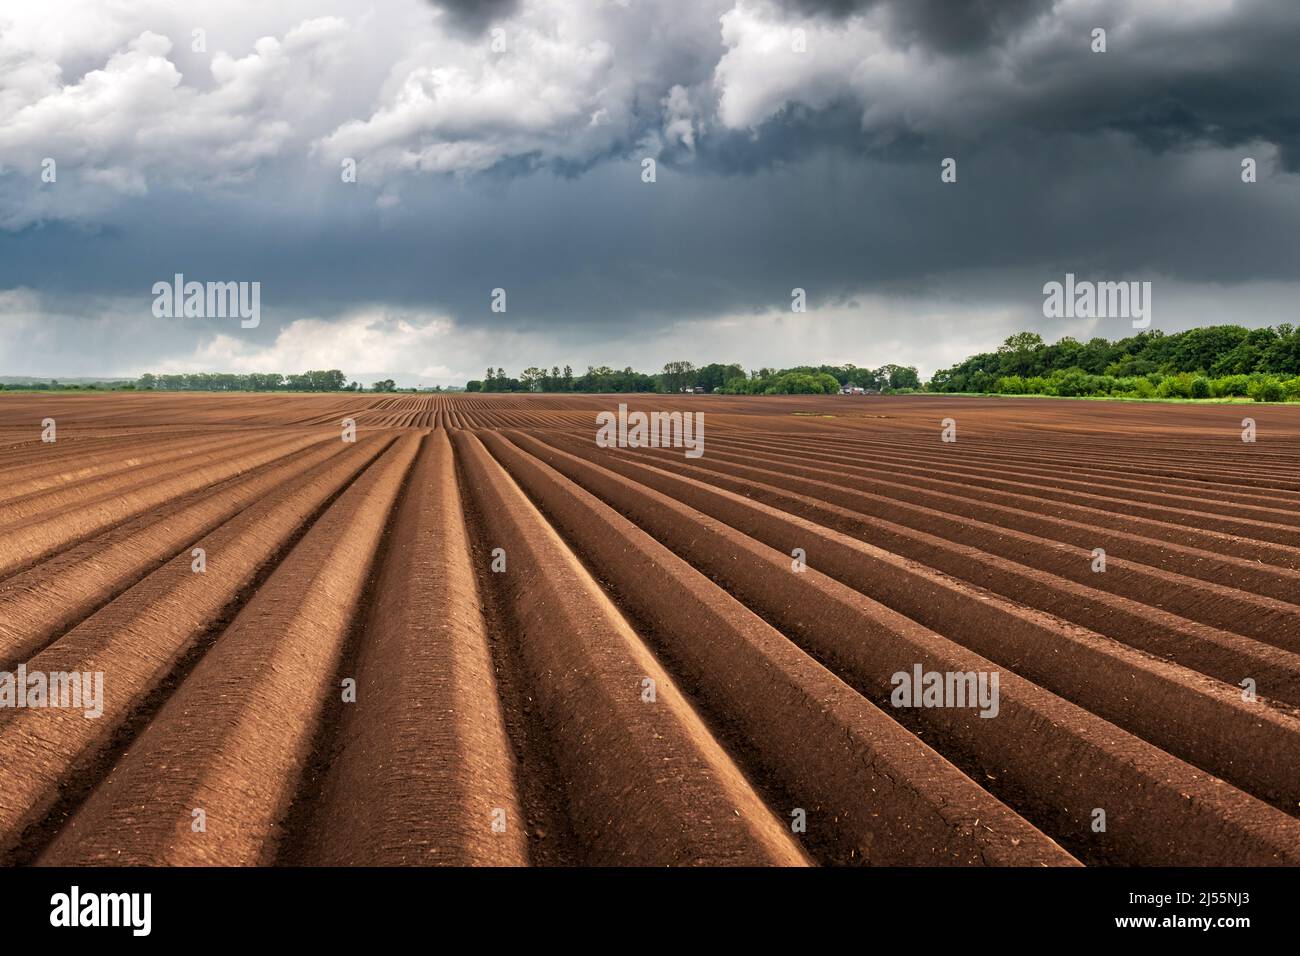 Champ agricole avec des rangs égaux au printemps. Culture de pommes de terre. Nuages noirs pluvieux en arrière-plan. Ukraine agriculture Banque D'Images